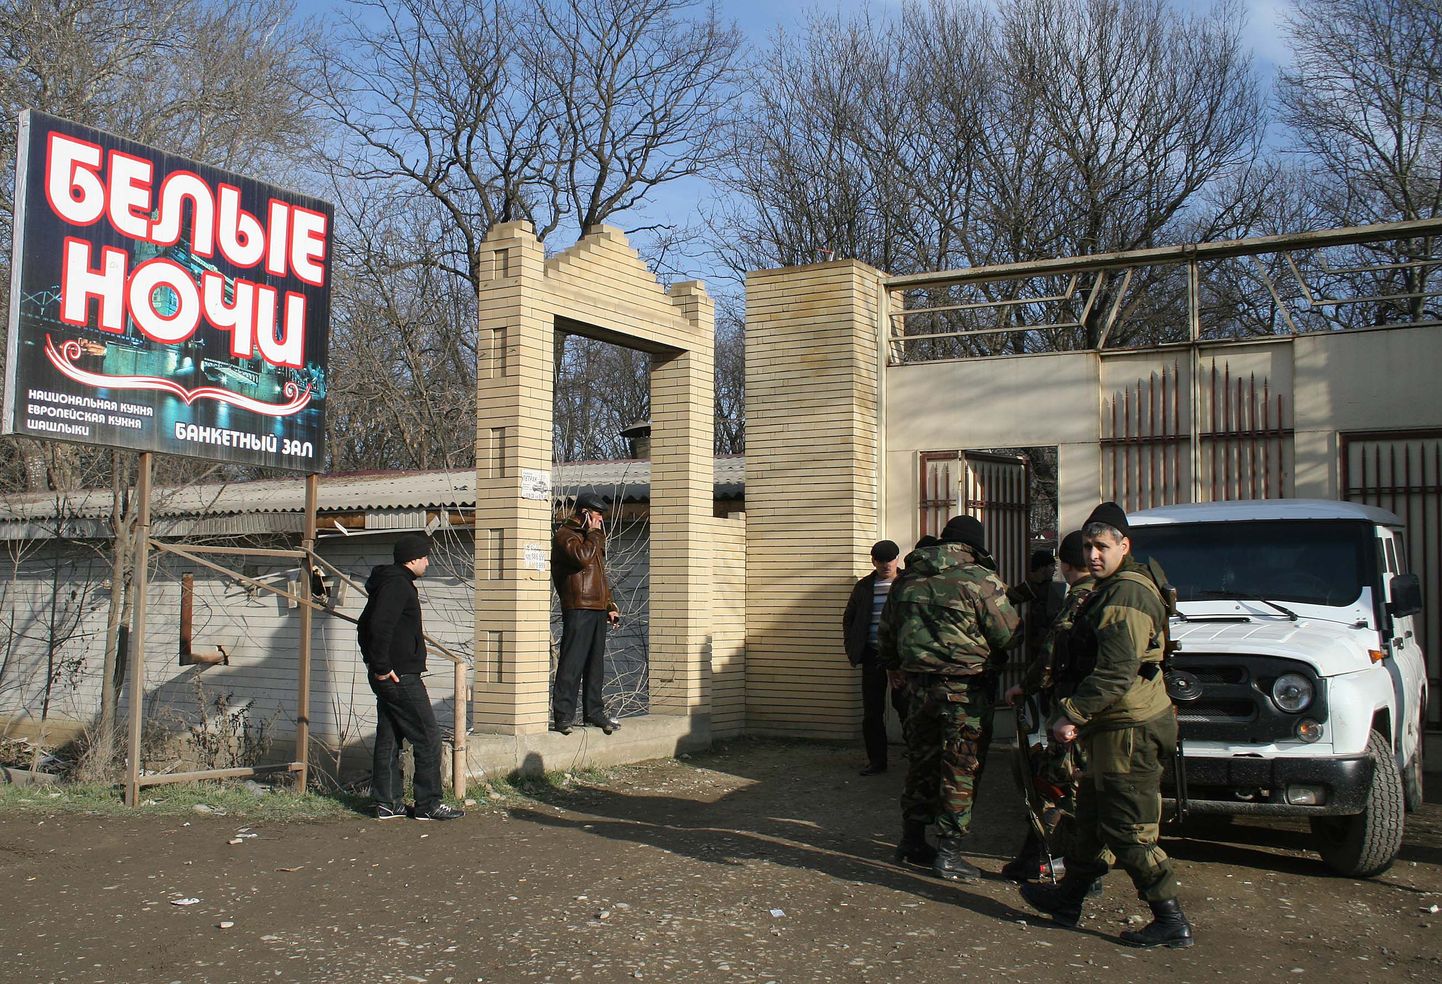 14. jaanuaril 2011 plahvatas autopomm kohviku Belõje Notši ehk Valged Ööd juures.